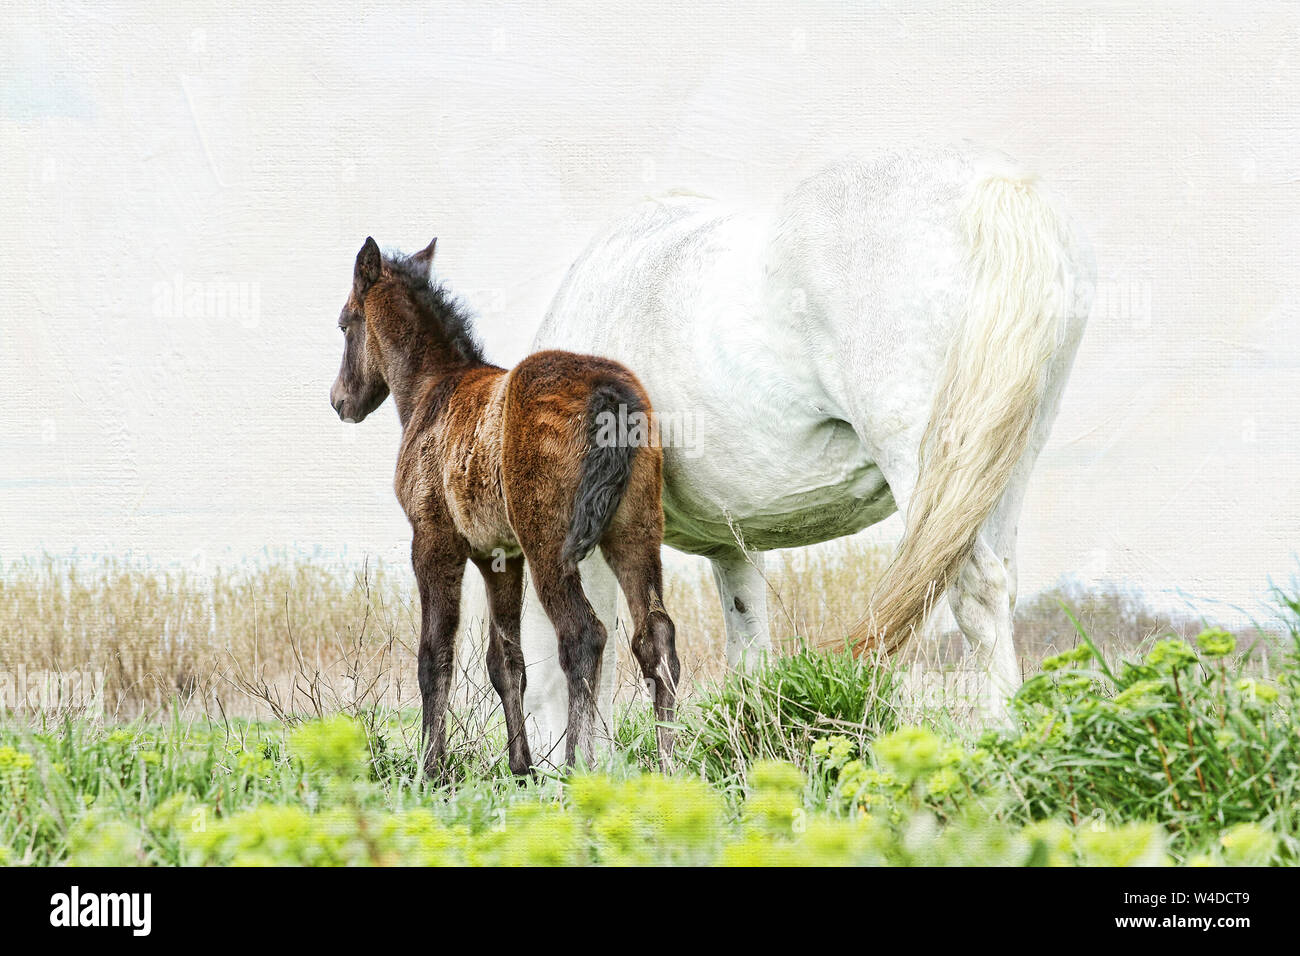 Die Camargue in Frankreich ist berühmt für seine schönen weißen Pferde. Überraschend, dass die Fohlen werden dunkel geboren und langsam weiß wie sie reifen. Stockfoto